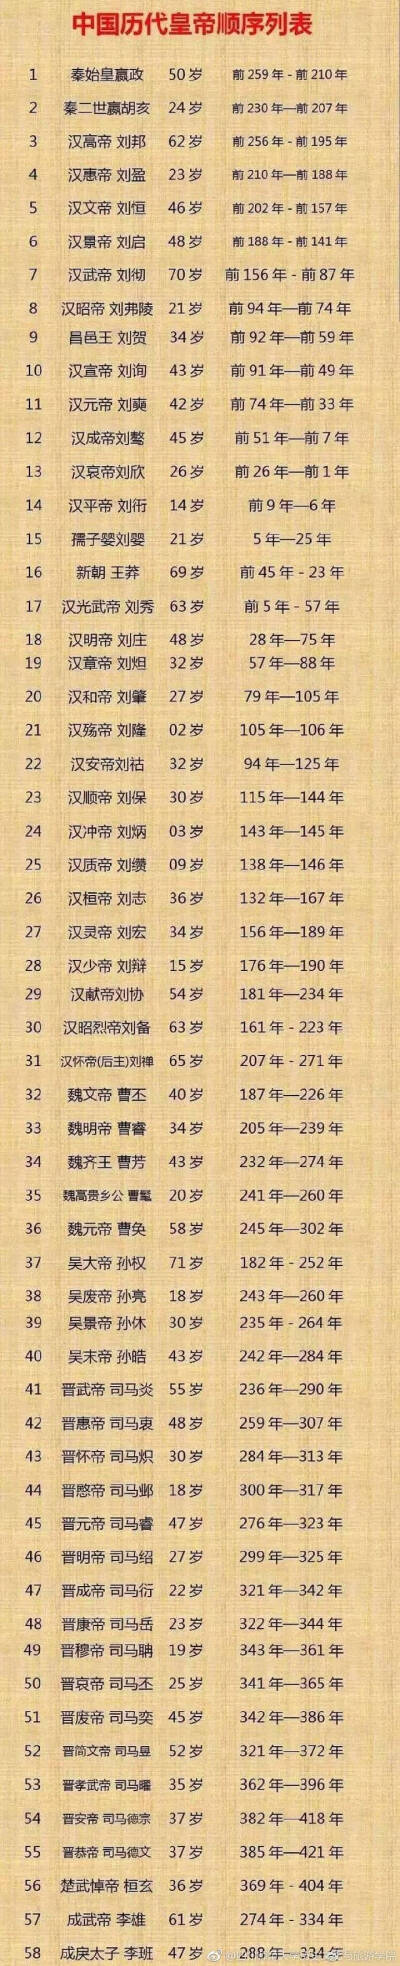 494位皇帝名字列表图片